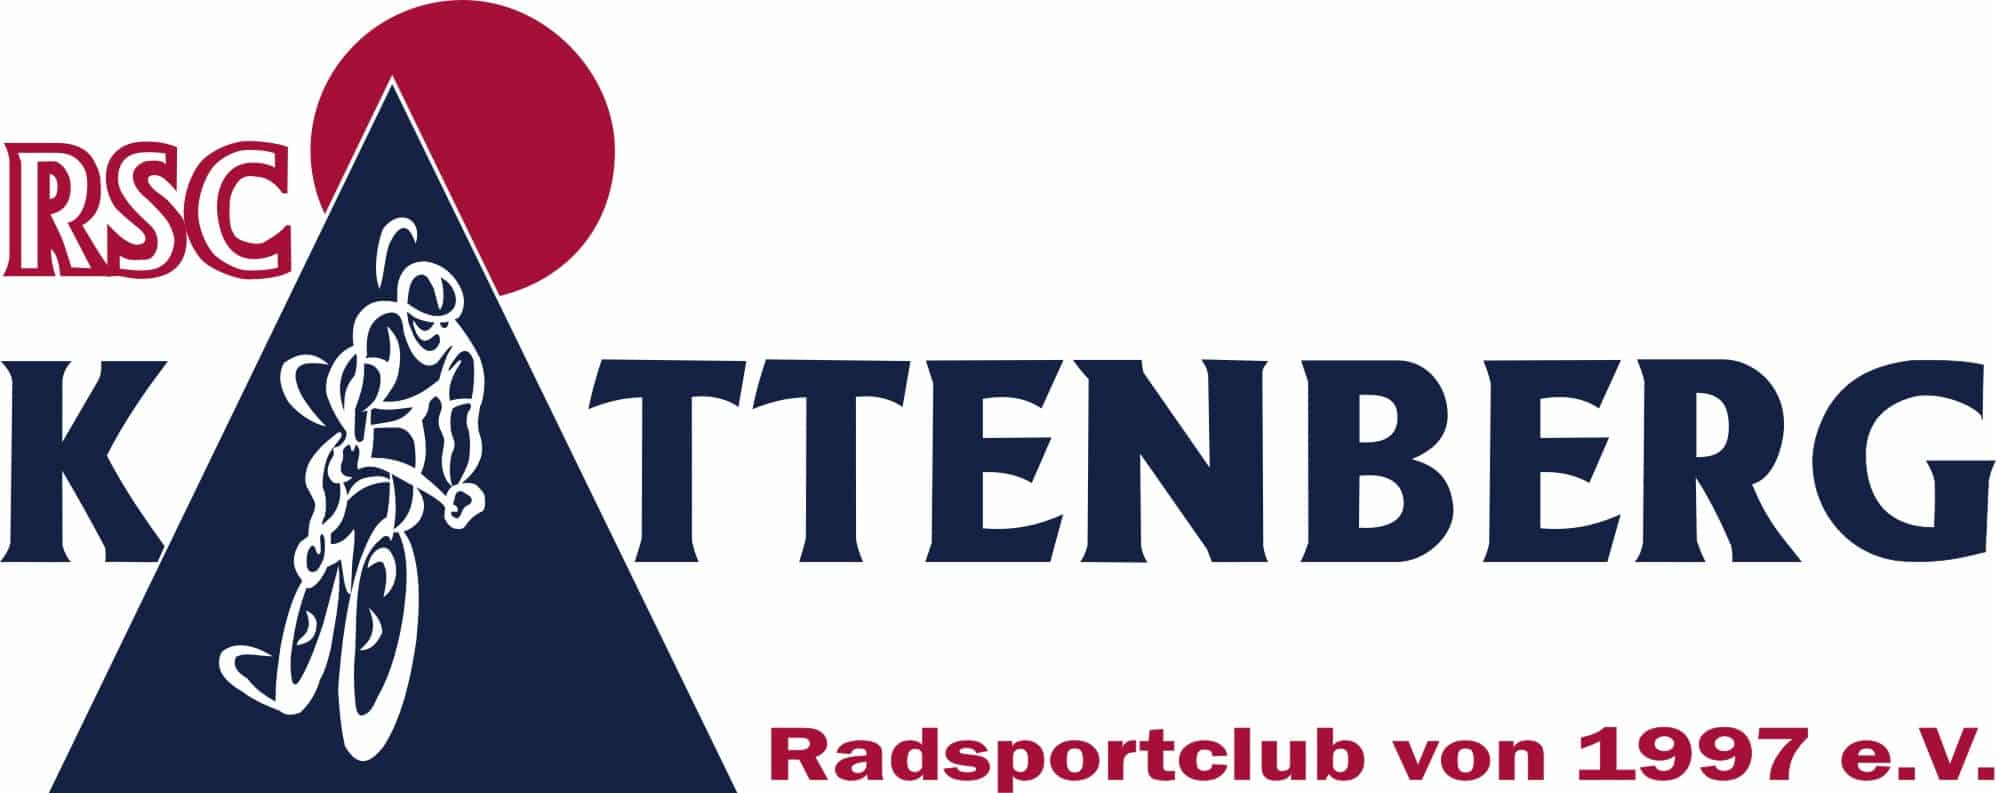 RSC Kattenberg